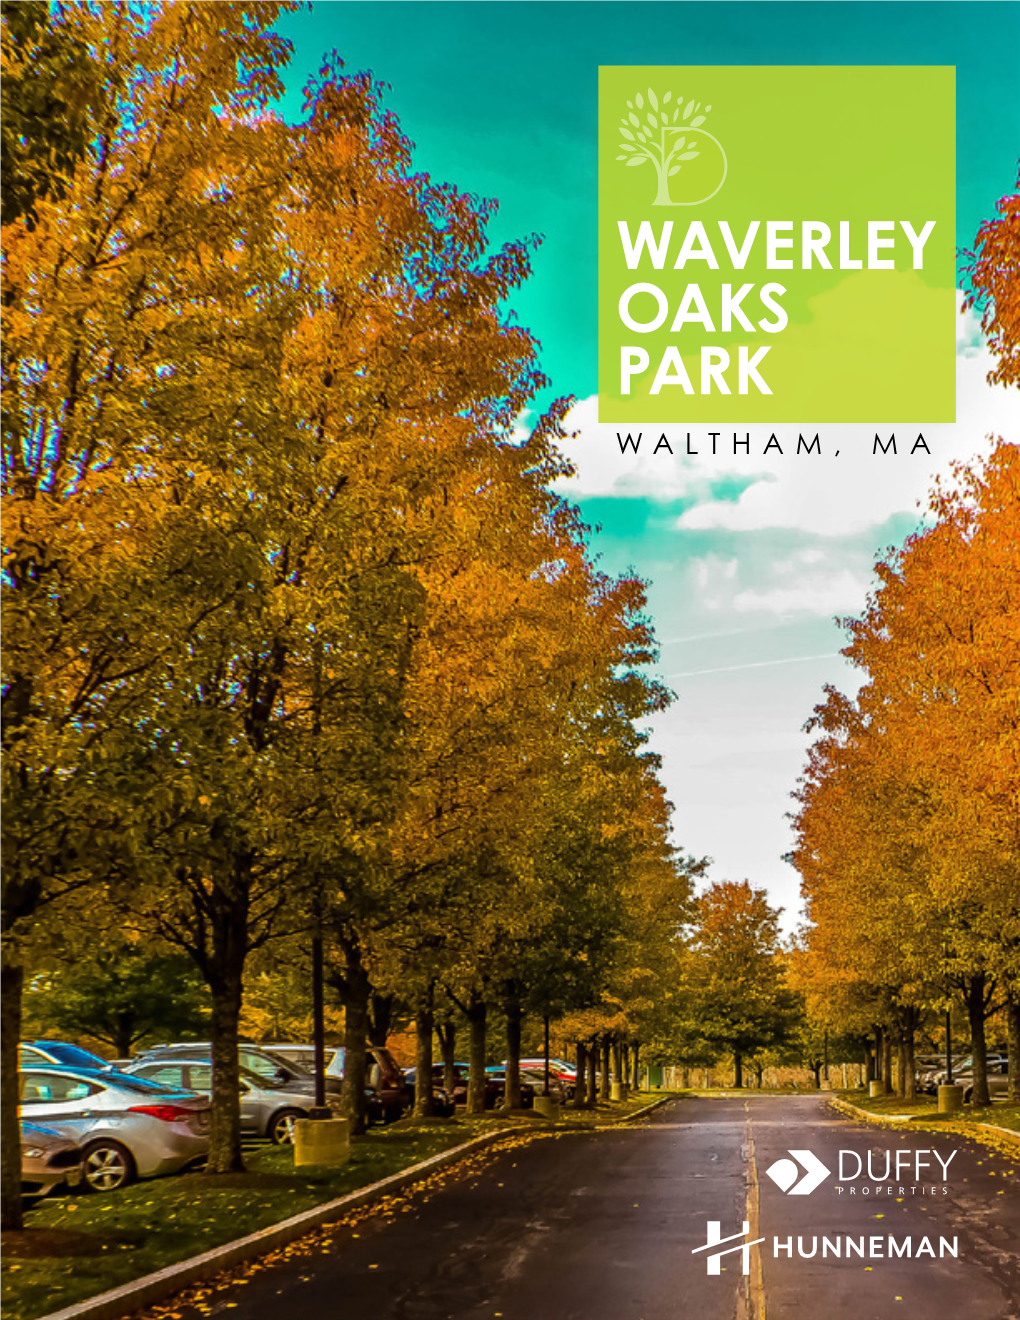 Waverley Oaks Park Waltham, Ma Waverley Oaks Park Waltham, Ma